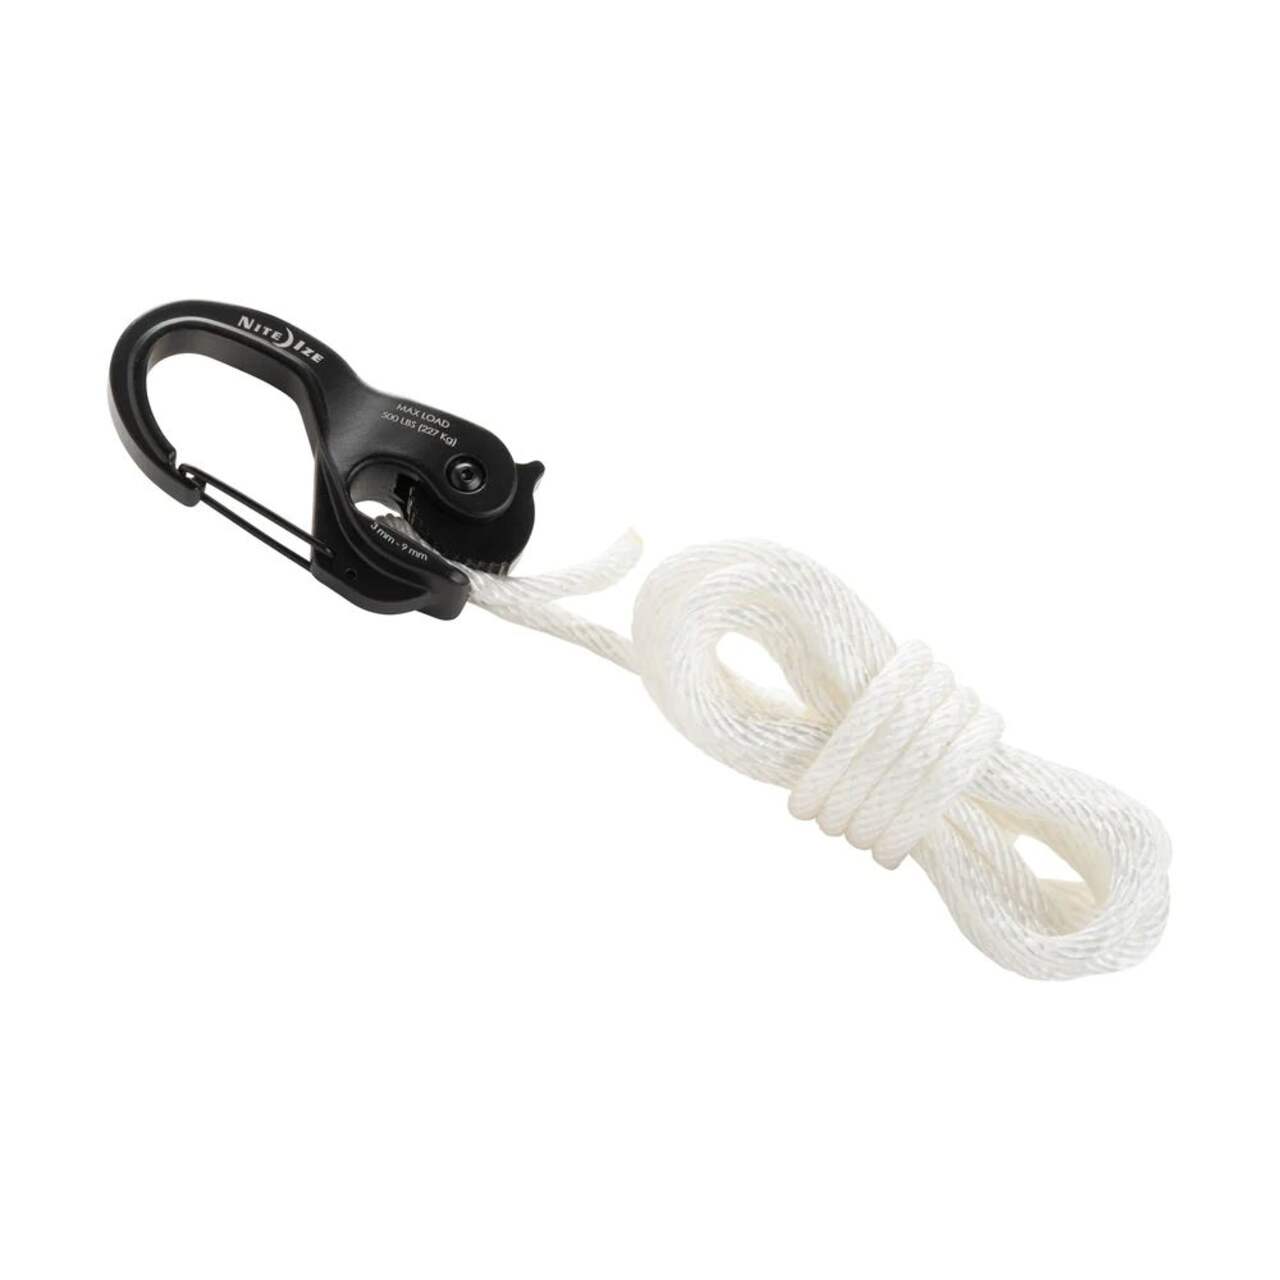 Tendeur de corde sans nœud en plastique CamJam de Nite Ize et mousqueton à pince  avec corde de 8 pi, paq. 2